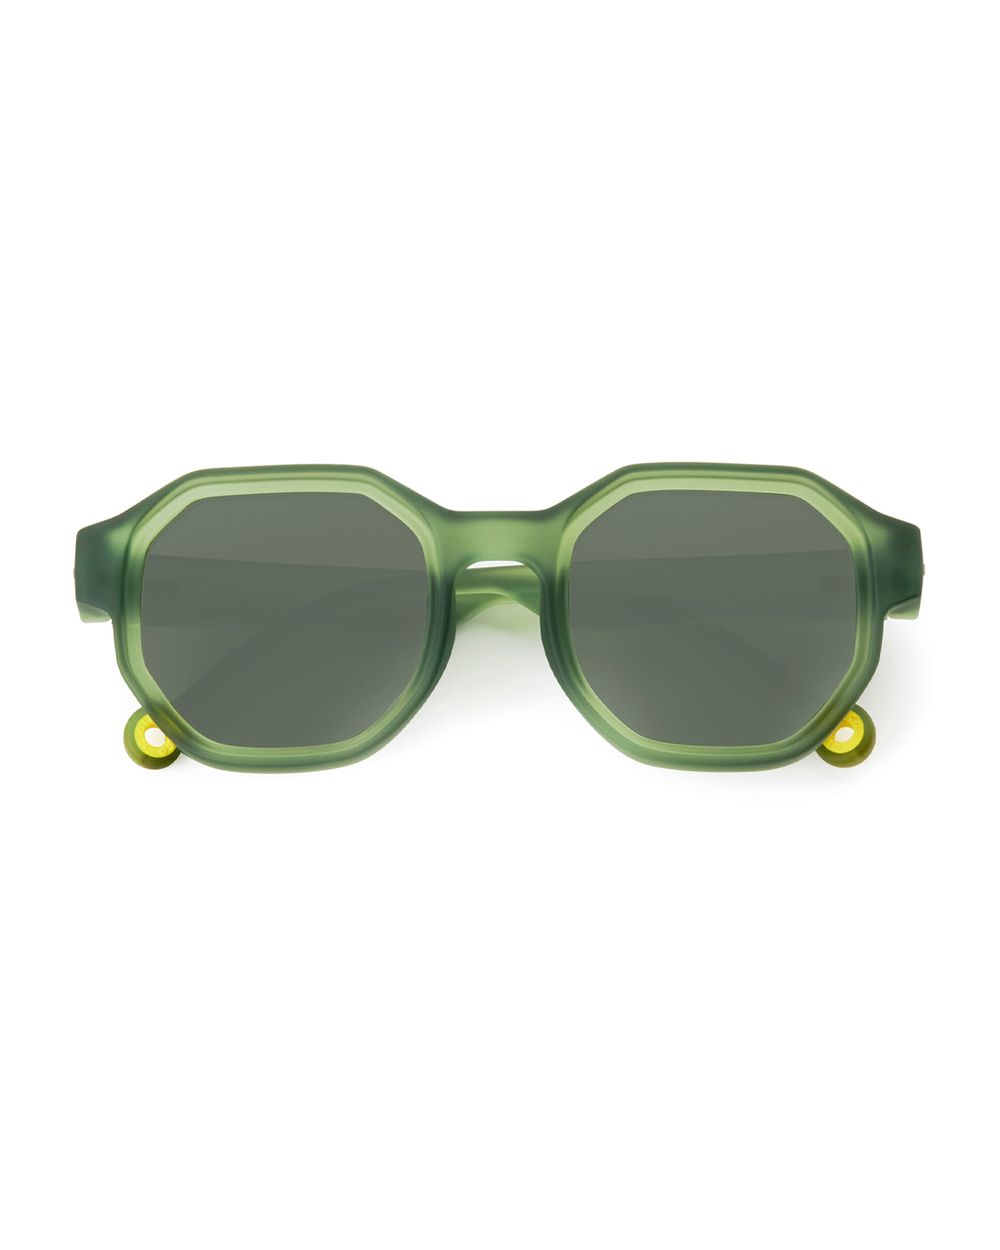 Adult Sunglasses Olive Green #D